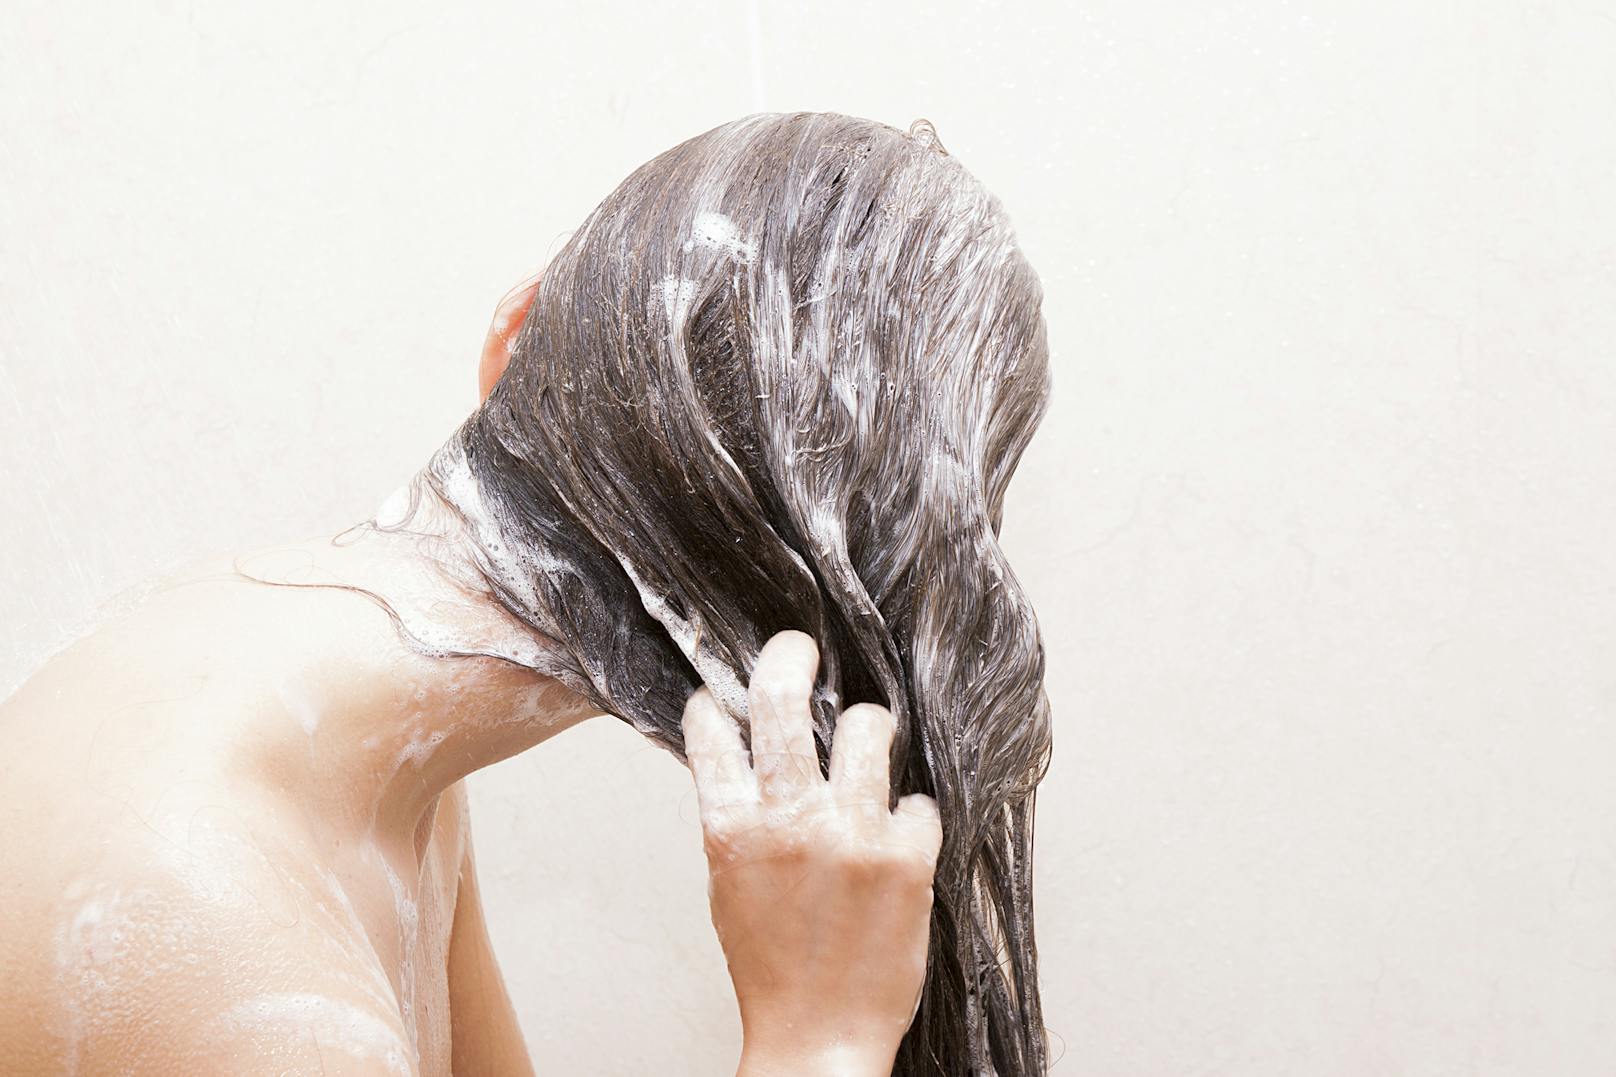 Es gehört zu unserem Alltag: Das Haarewaschen. Obwohl wir es schon tausende Mal gemacht haben, kann dabei doch einiges schief gehen.